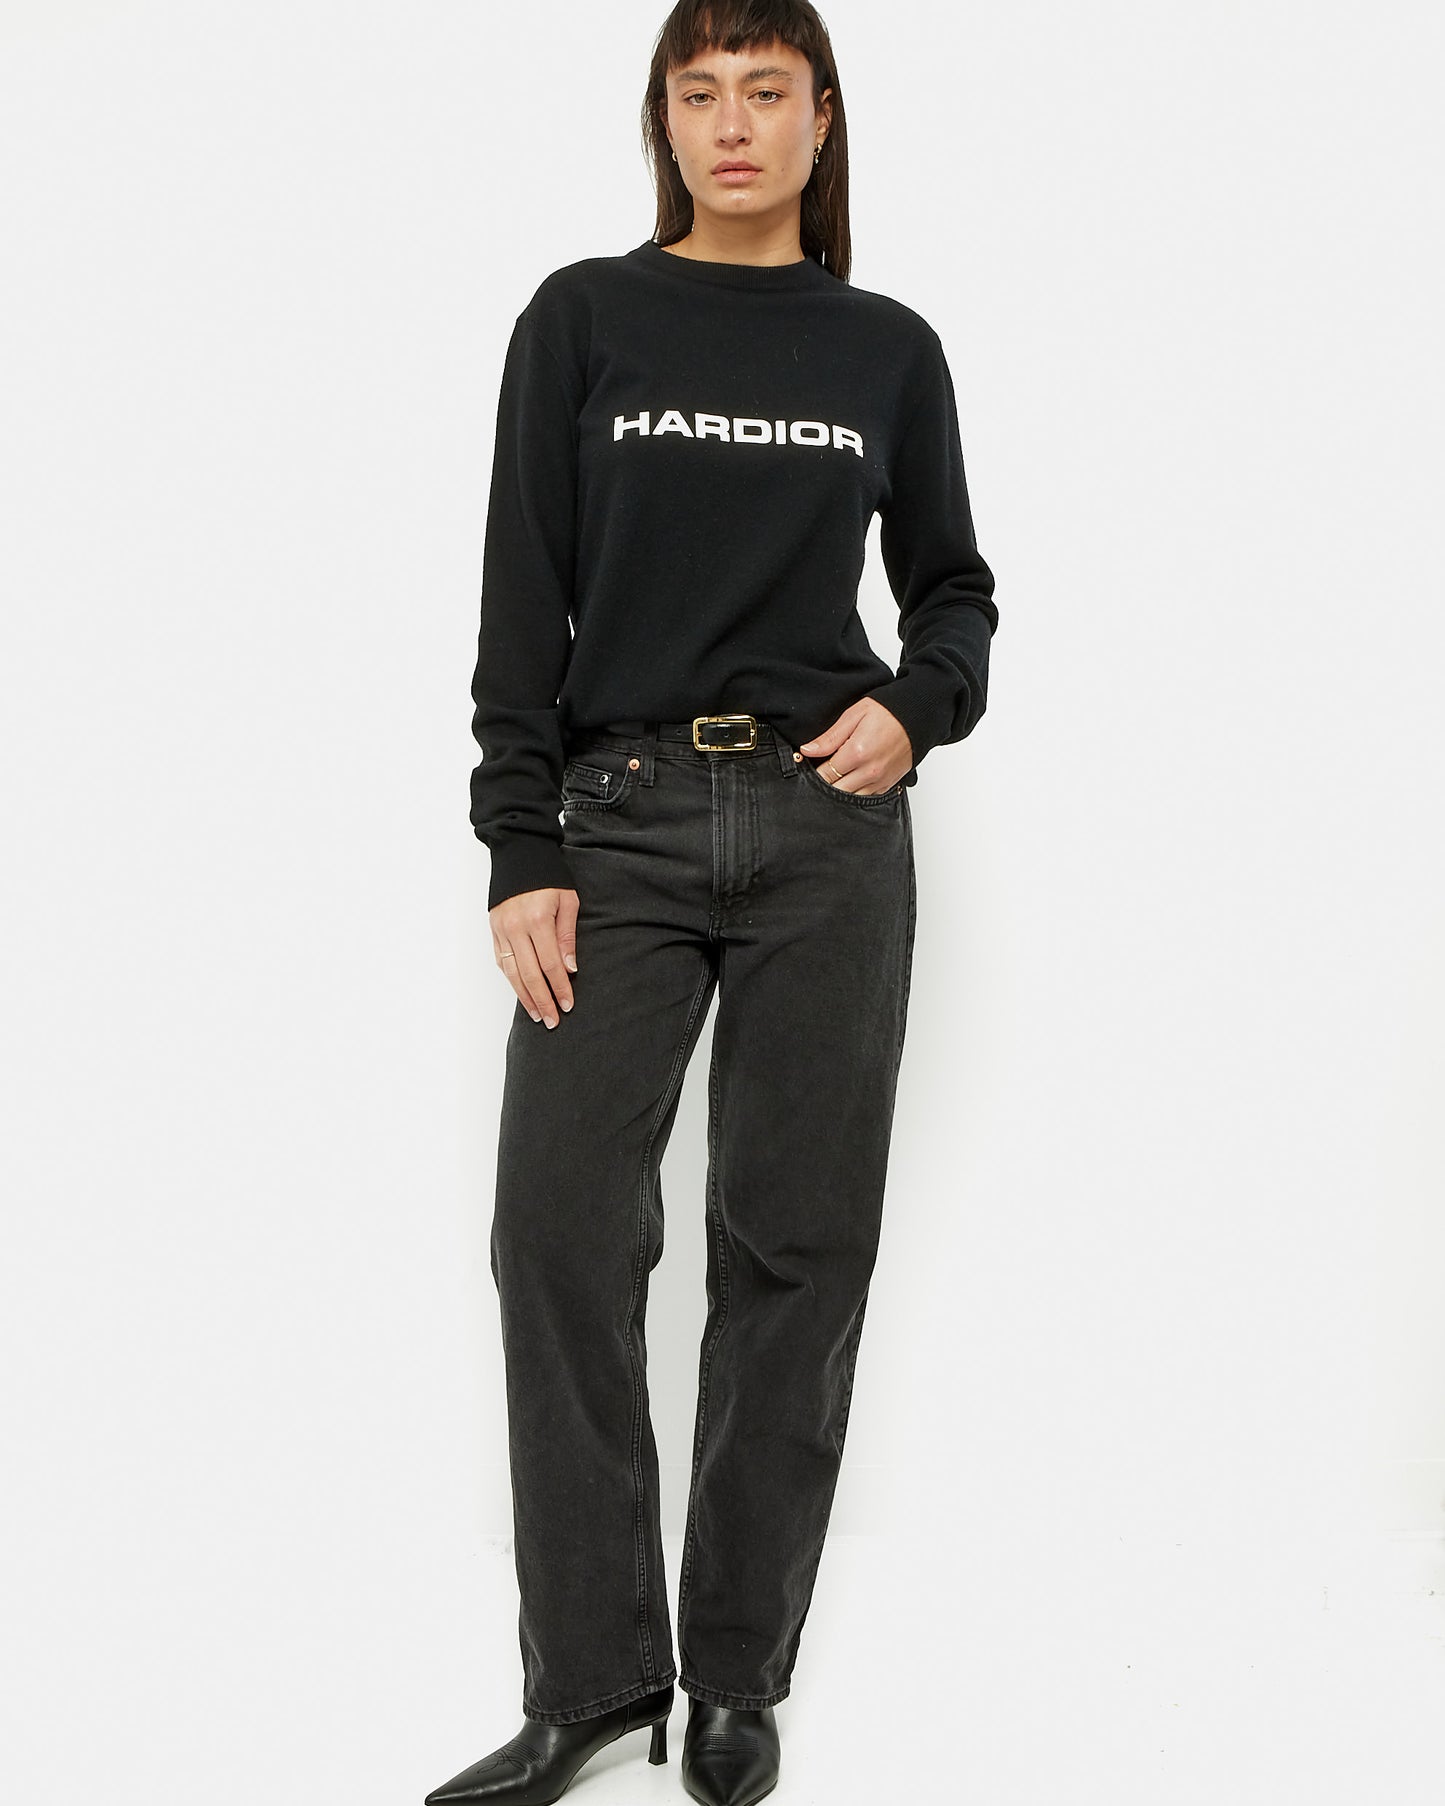 Dior Black Wool & Cashmere HardDior Crew Neck Sweater - S